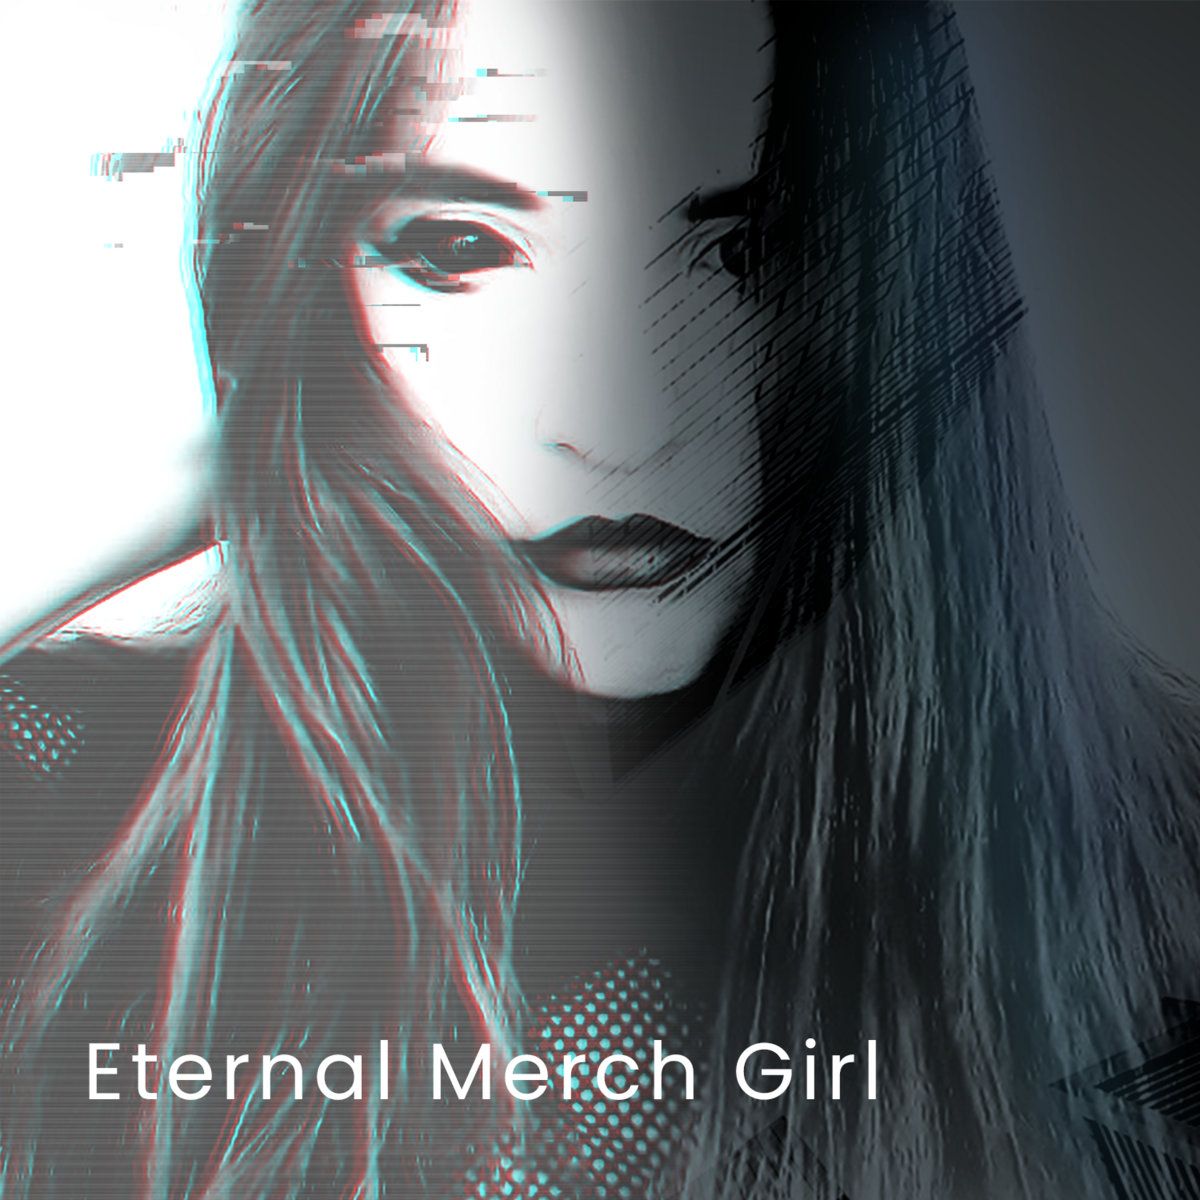 Alia Synesthesia  “Eternal Merch Girl”